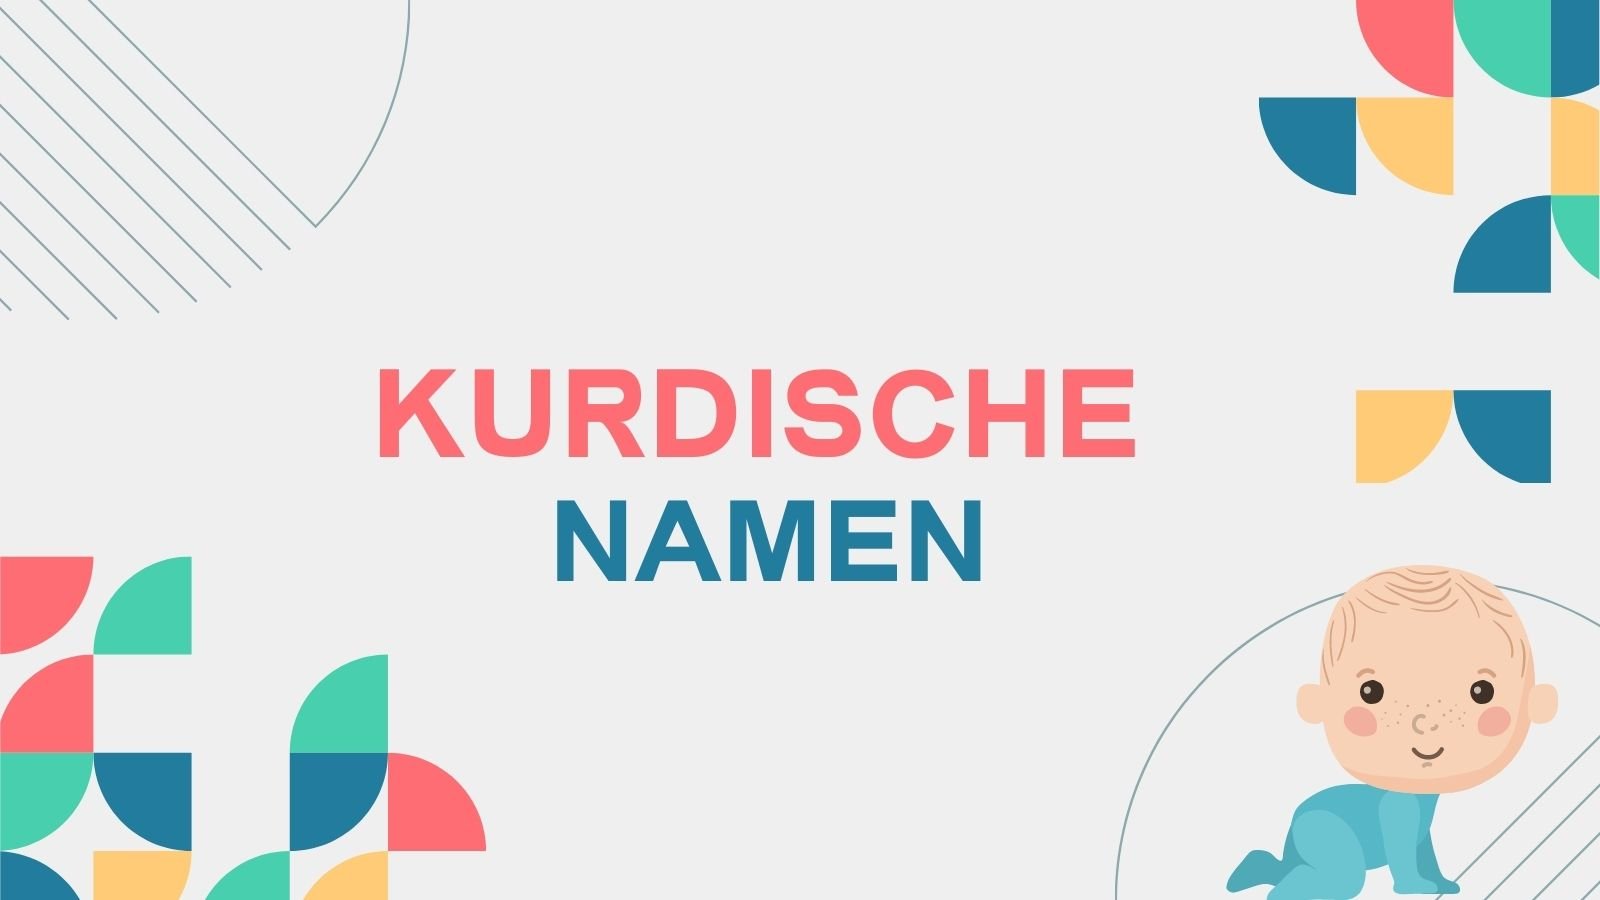 Kurdische Namen